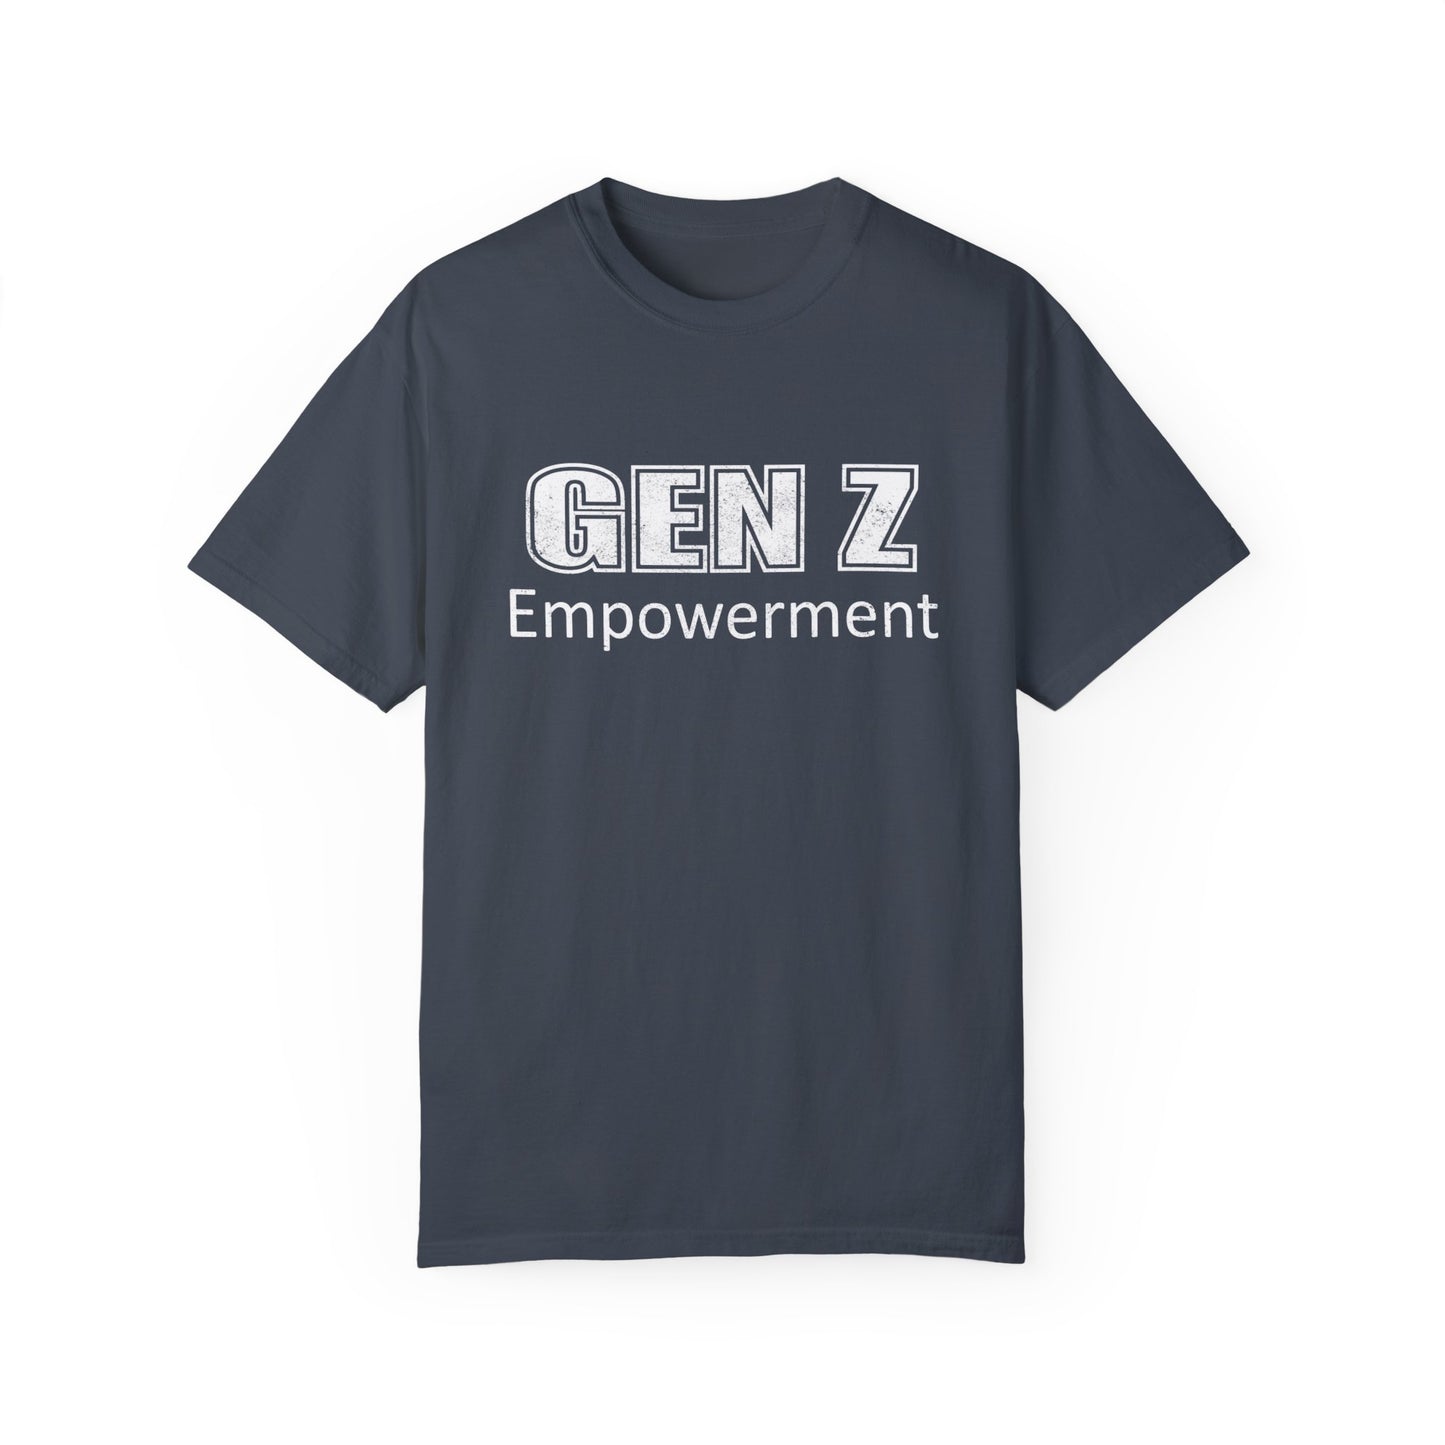 Gen Z Shirt, Empowerment Shirt, Generation Z T-Shirt, Comfort Colors Shirt, Gen Z Trendy Shirt, Gen Z Distressed Shirt, Gen Z Logo Shirt